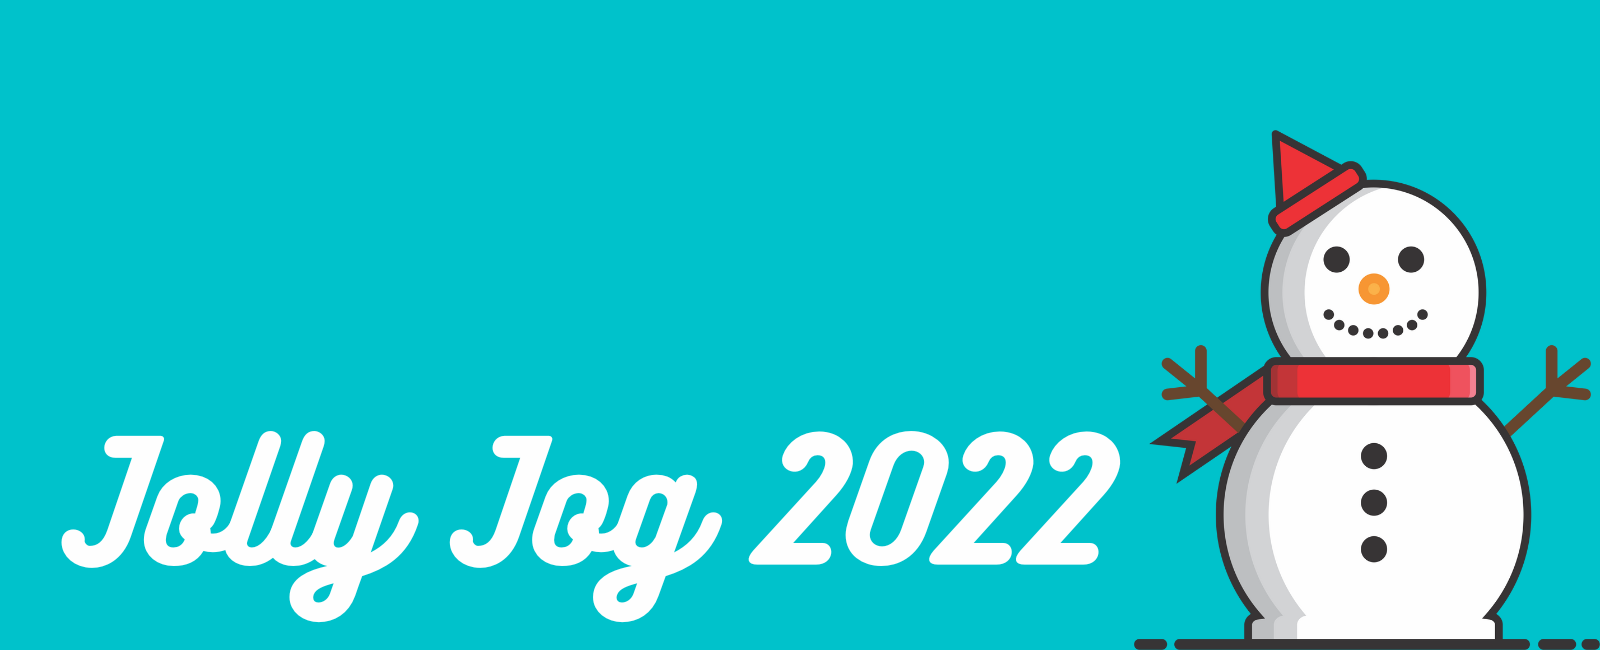 "Jolly Jog 2022" with a snowman